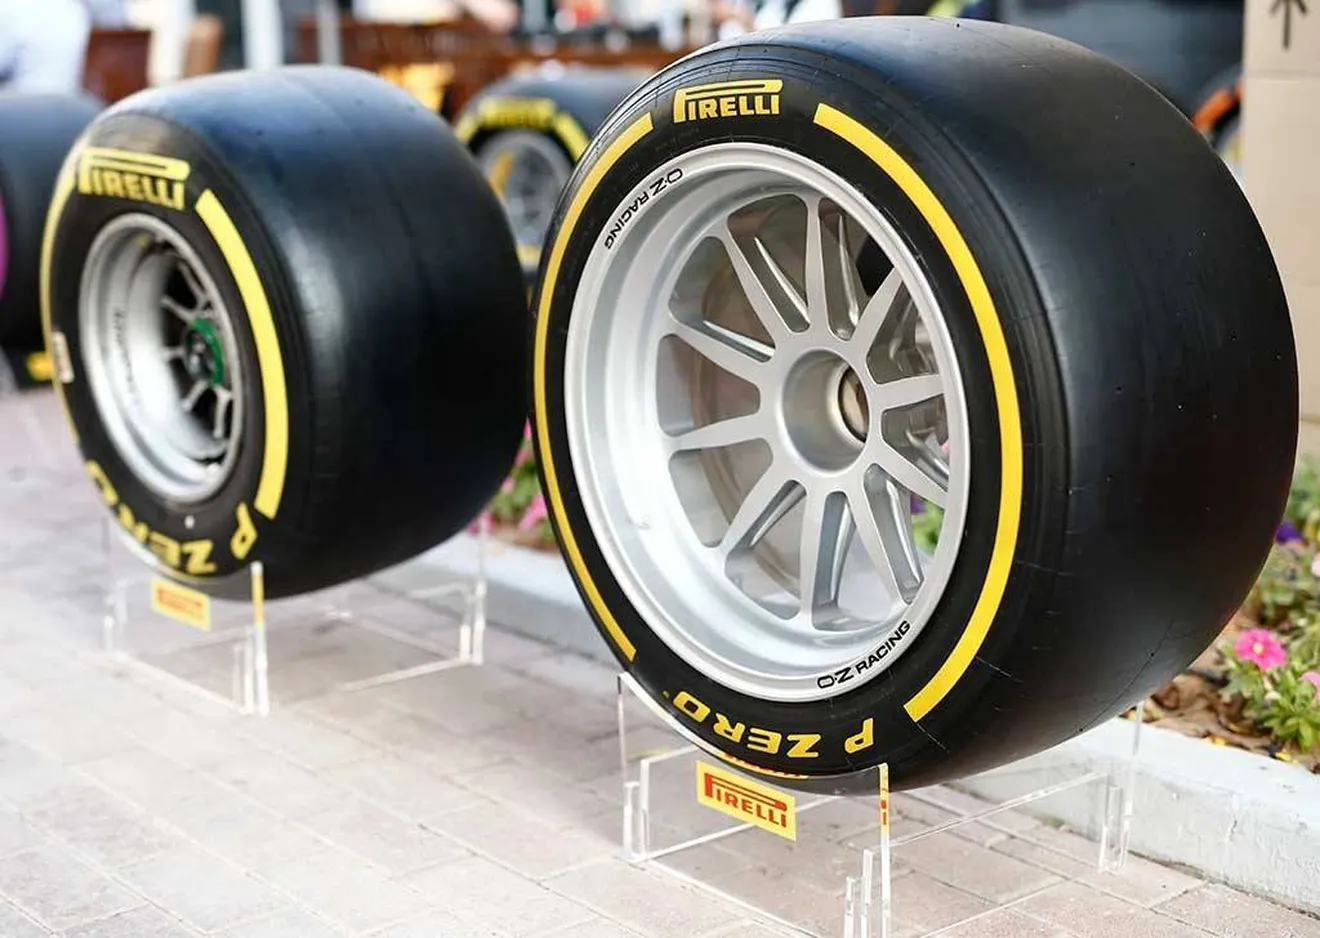 Pirelli da más detalles sobre el plan de desarrollo de los neumáticos de 18 pulgadas